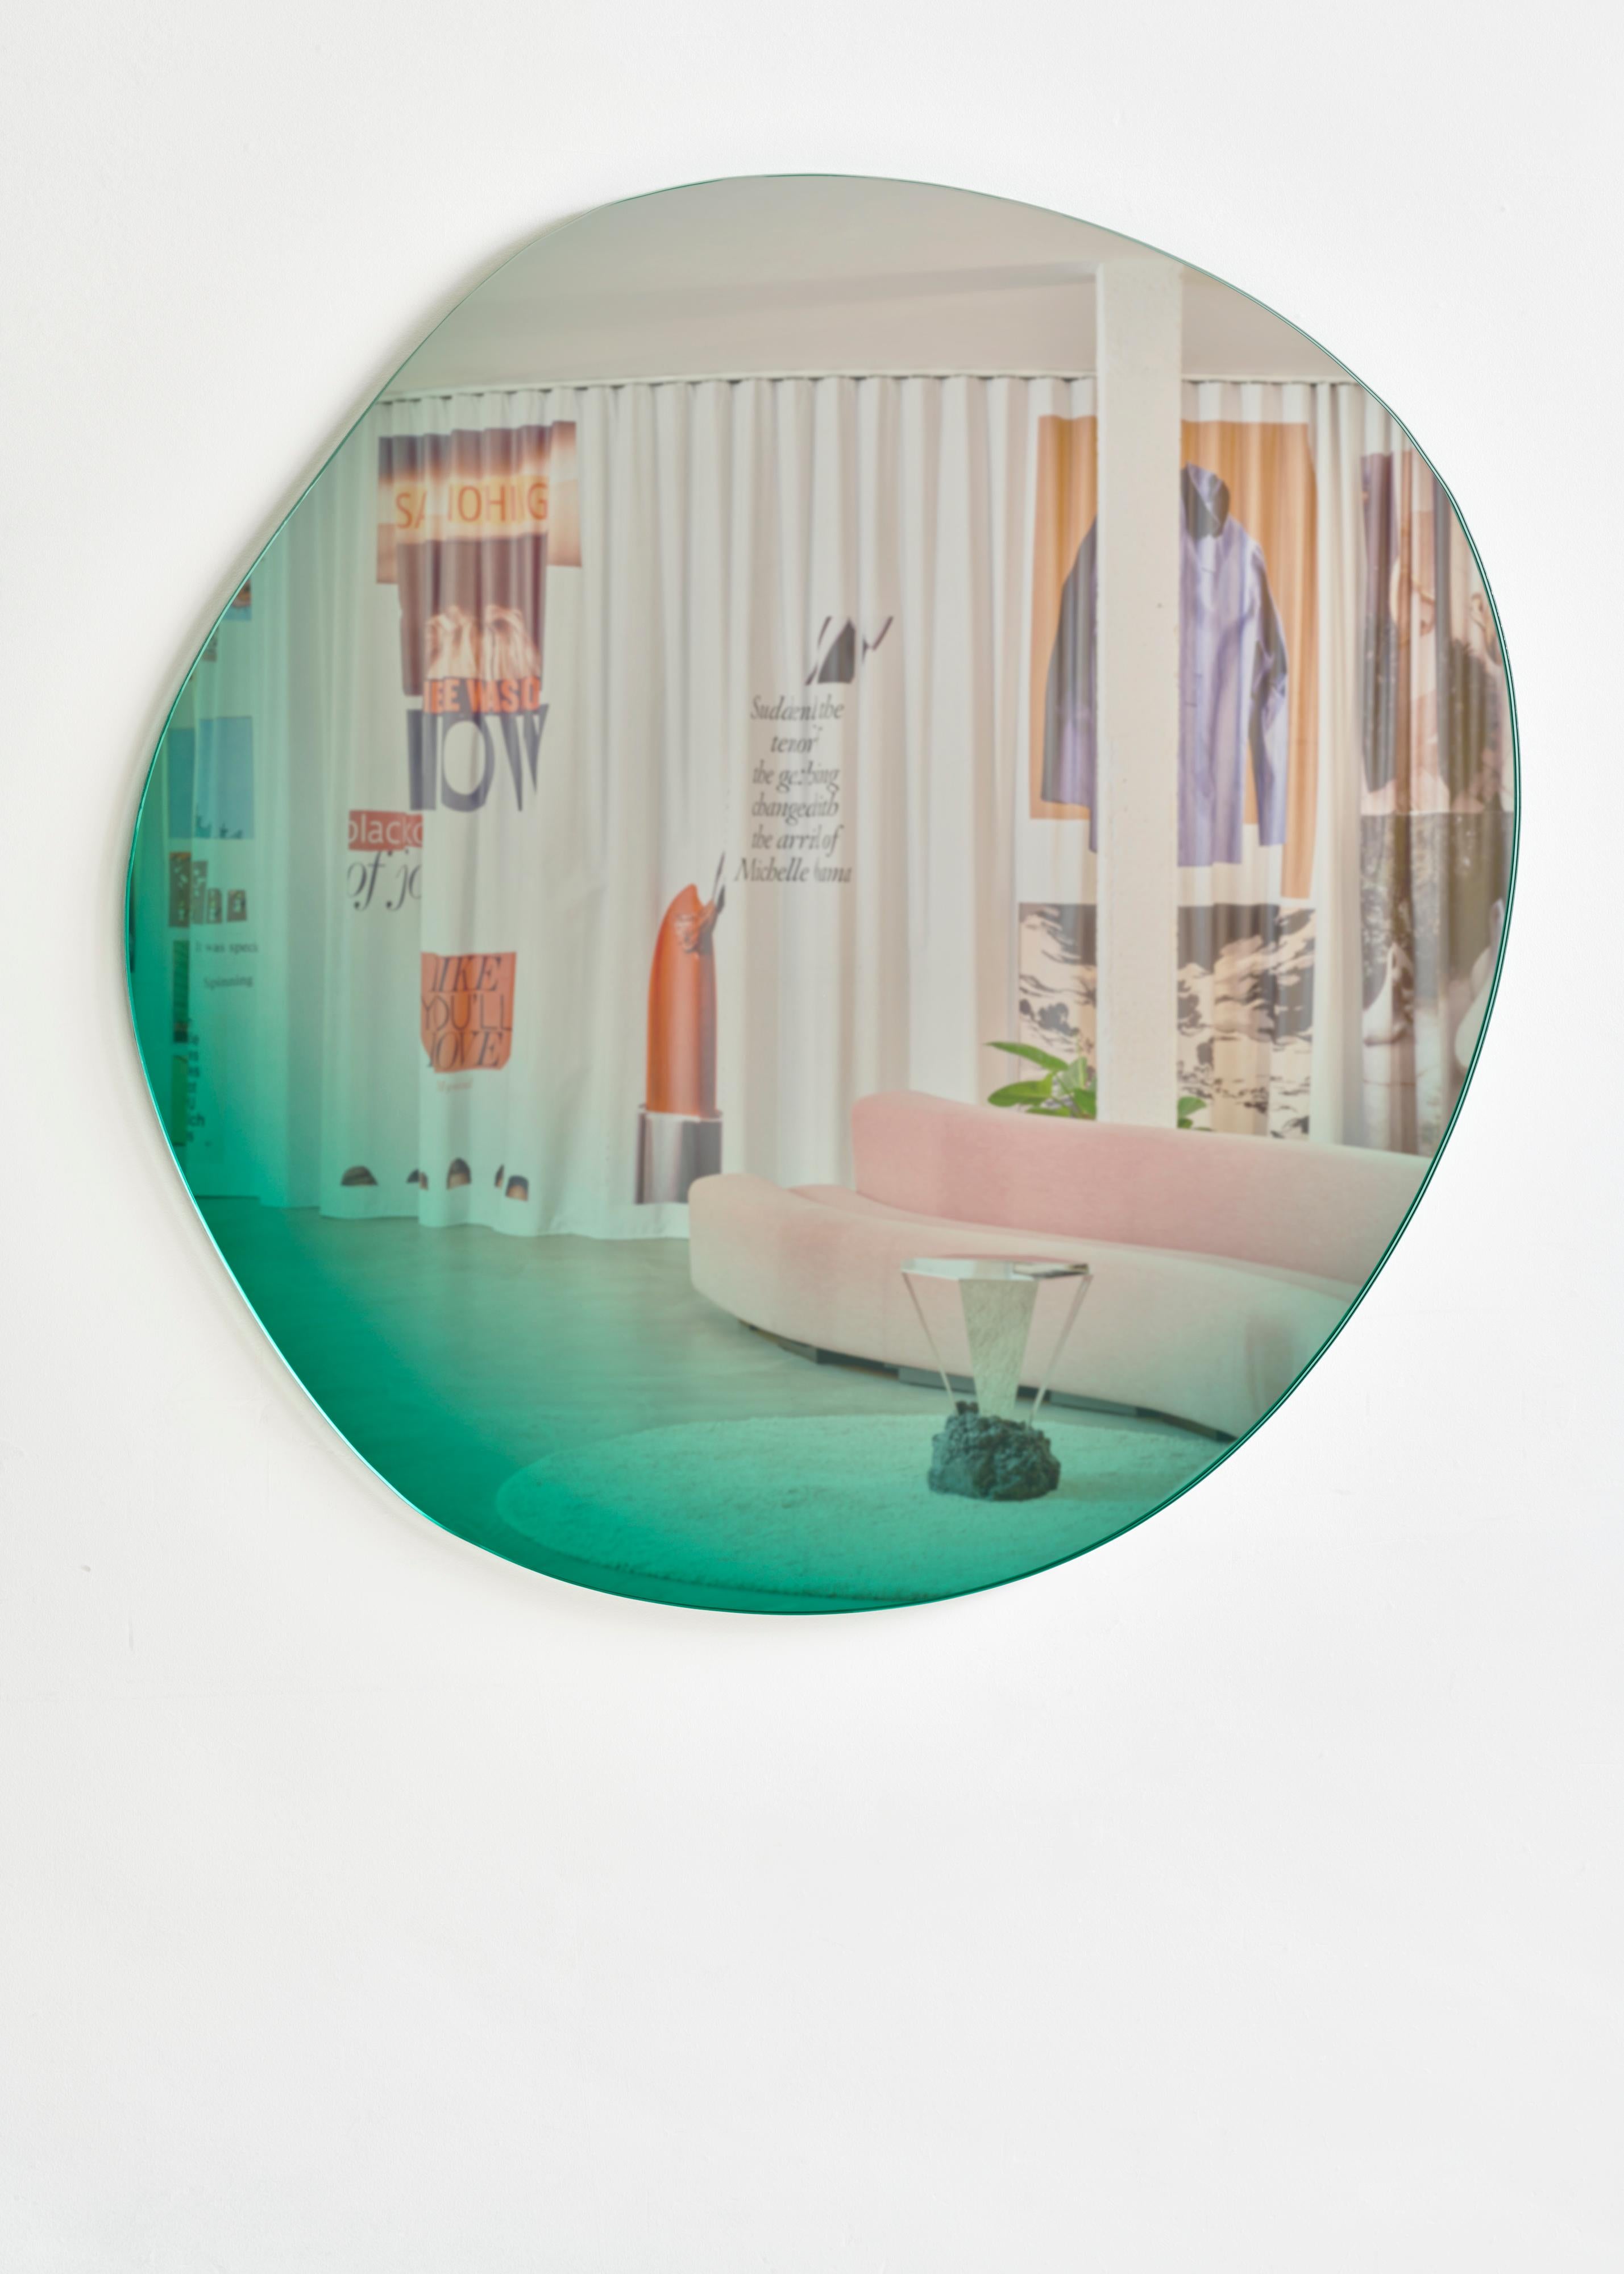 Neuestes Design in der Off Round Hue Spiegelserie

Sabine Marcelis und Brit van Nerven arbeiteten gemeinsam an dem Projekt 'Seeing Glass' - eine Serie von Glasobjekten, die aus einer laufenden Studie über optische Effekte mit Glas als primärem